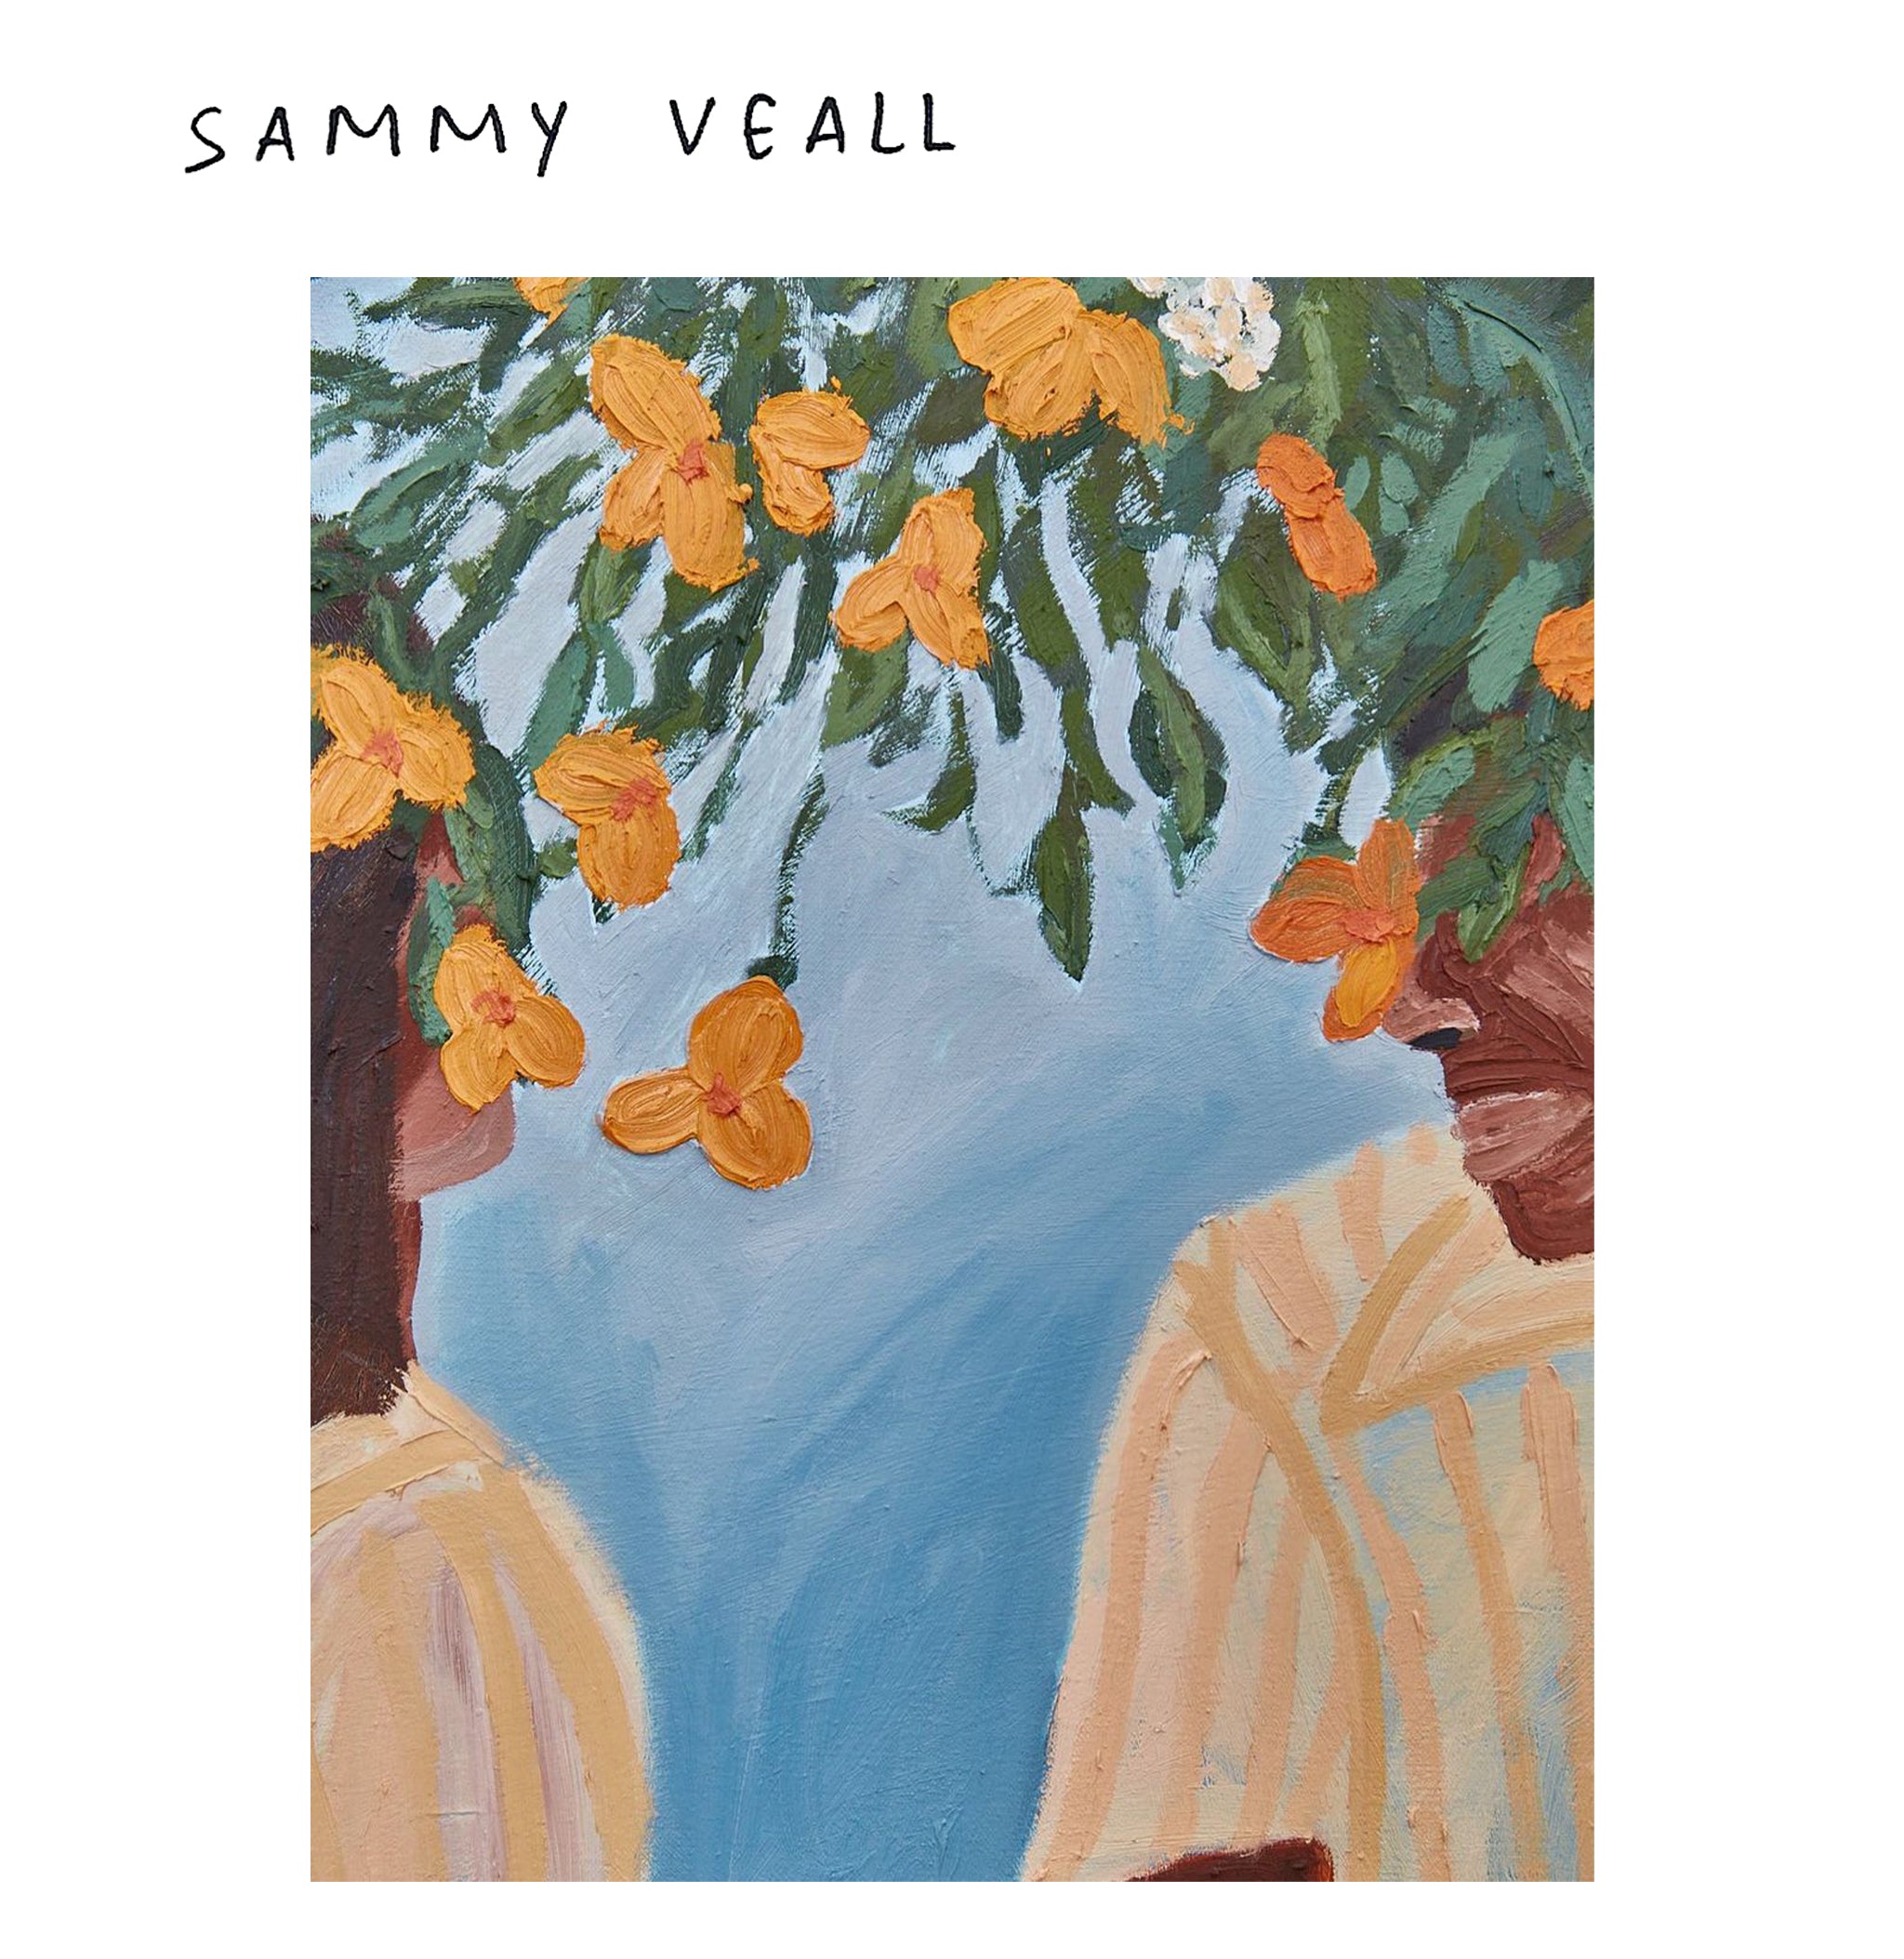 Sammy Veall